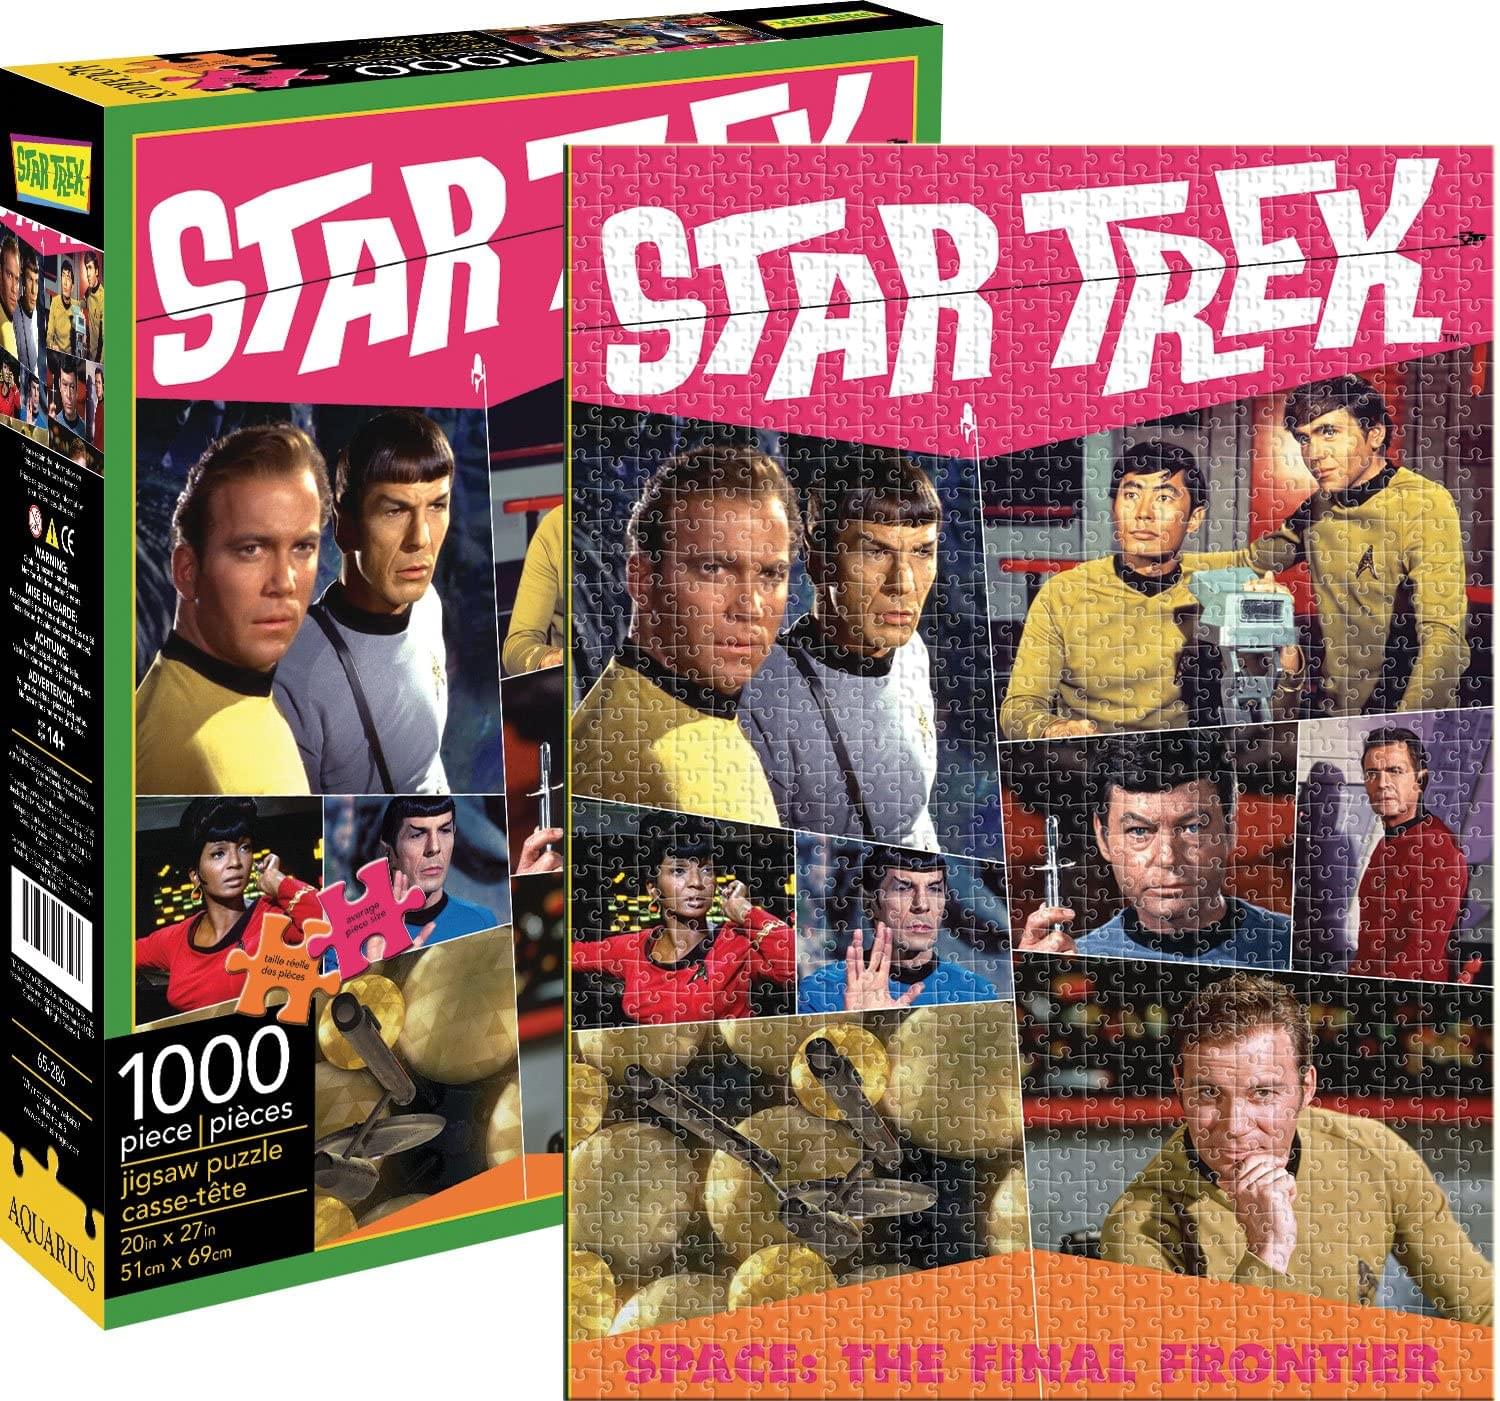 Star Trek The Original Series 1000 Piece Jigsaw Puzzle